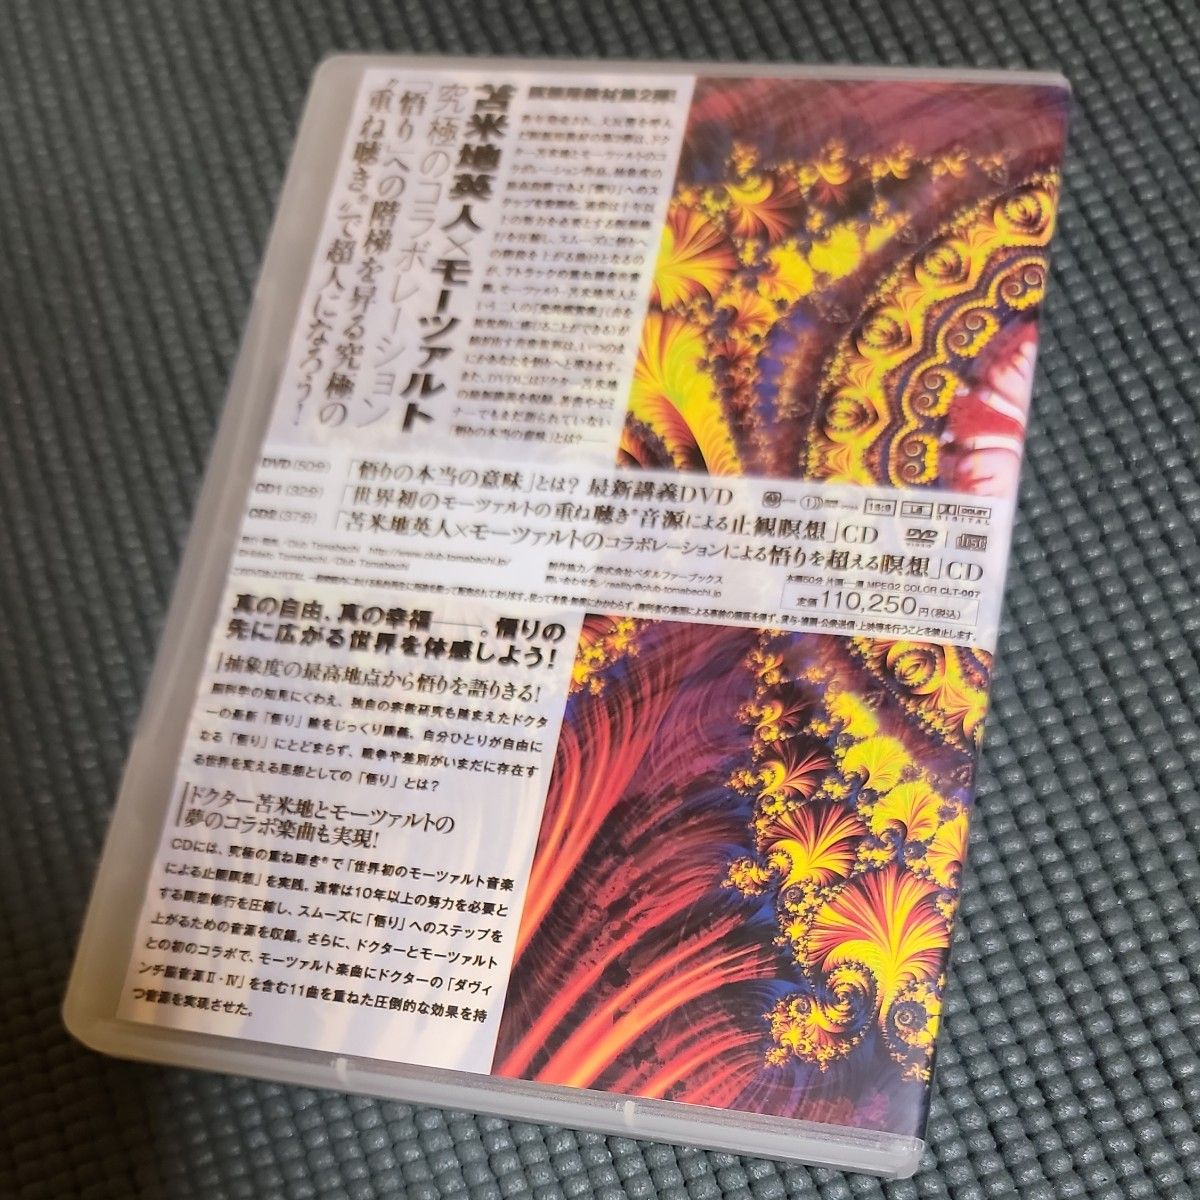 苫米地英人 「悟り」への道 DVD CD 瞑想 大周天 モーツァルト 気功 機能音源